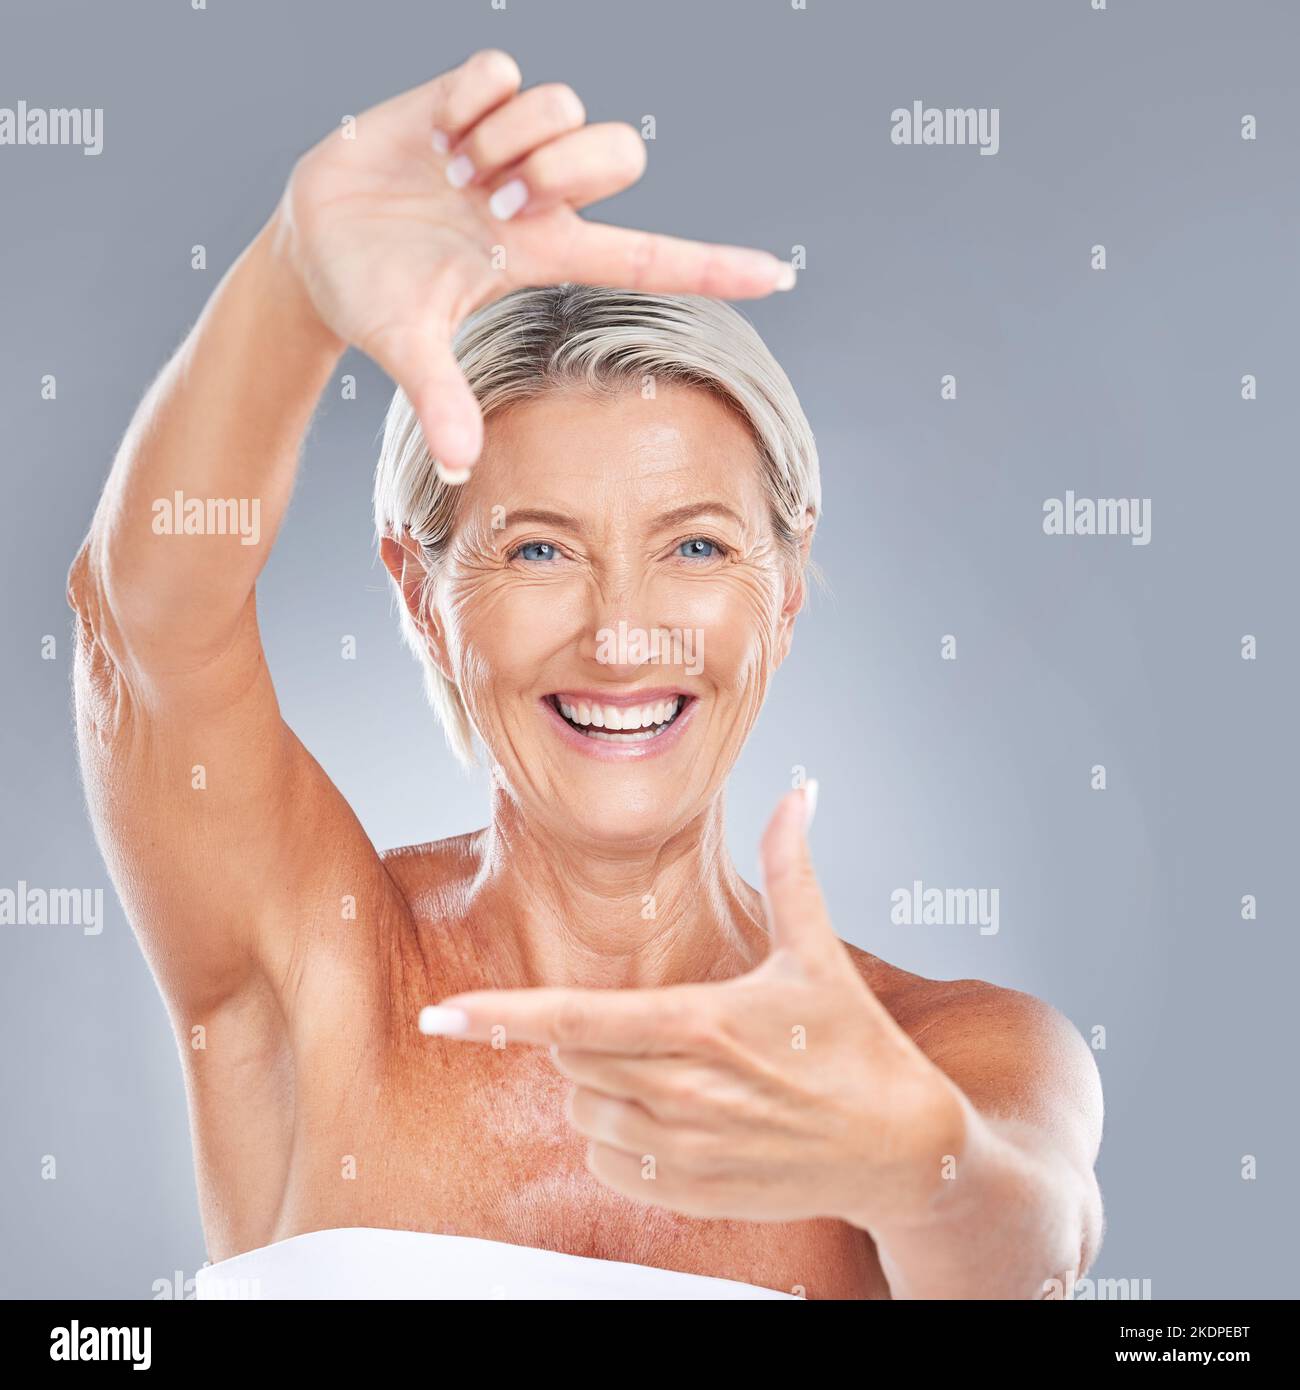 Bild Hand Gesichtsrahmen, glücklich und ältere Frau mit einem Lächeln von Haut Wellness und Schönheit. Porträt einer älteren Person Modell Gefühl Glück aus Stockfoto